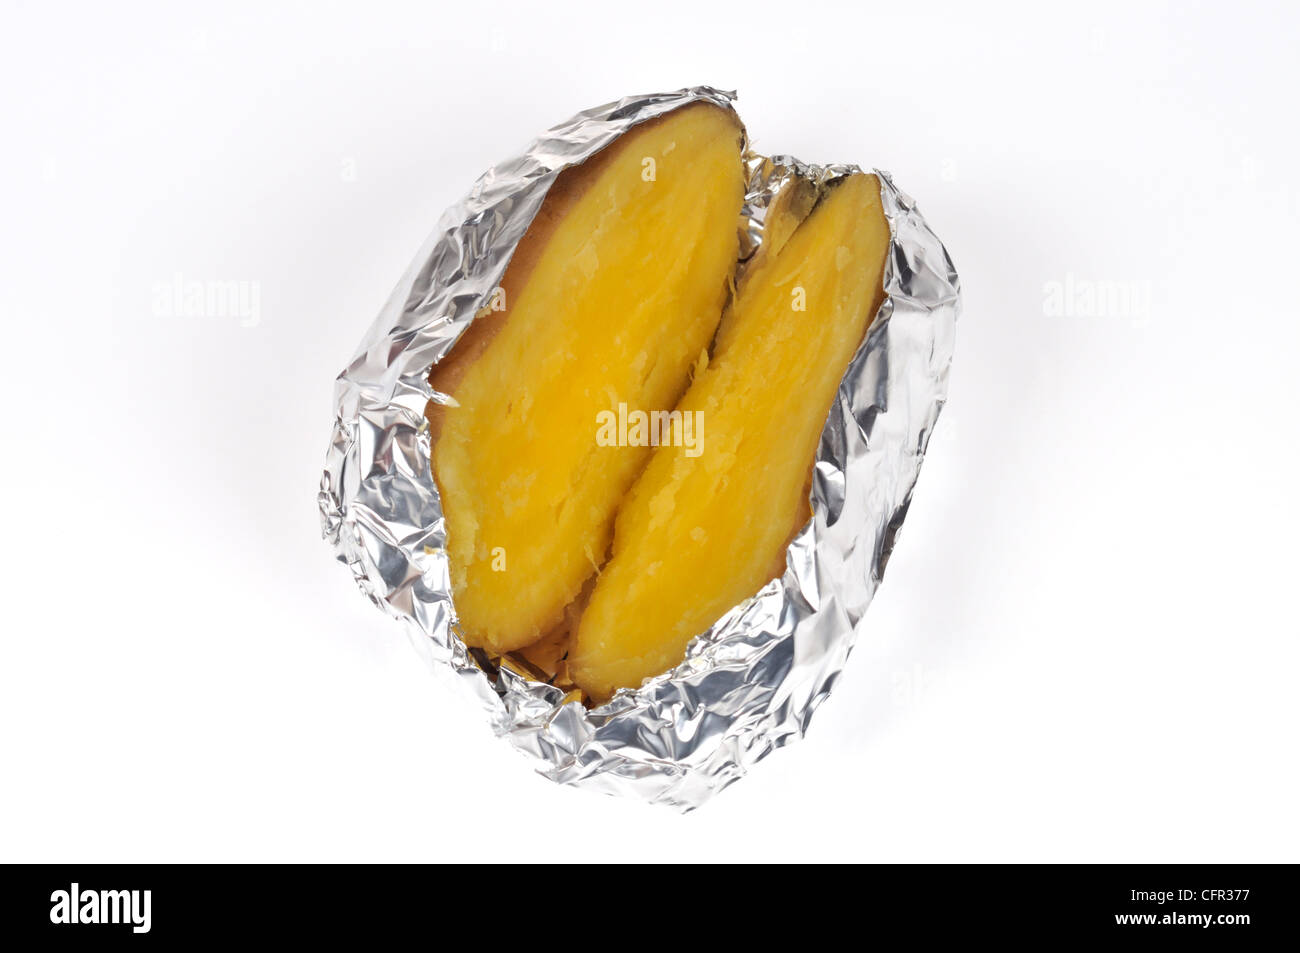 Cuocere al forno camicia yukon gold potato tagliato a metà avvolto nel foglio di stagno su sfondo bianco tagliato fuori Foto Stock